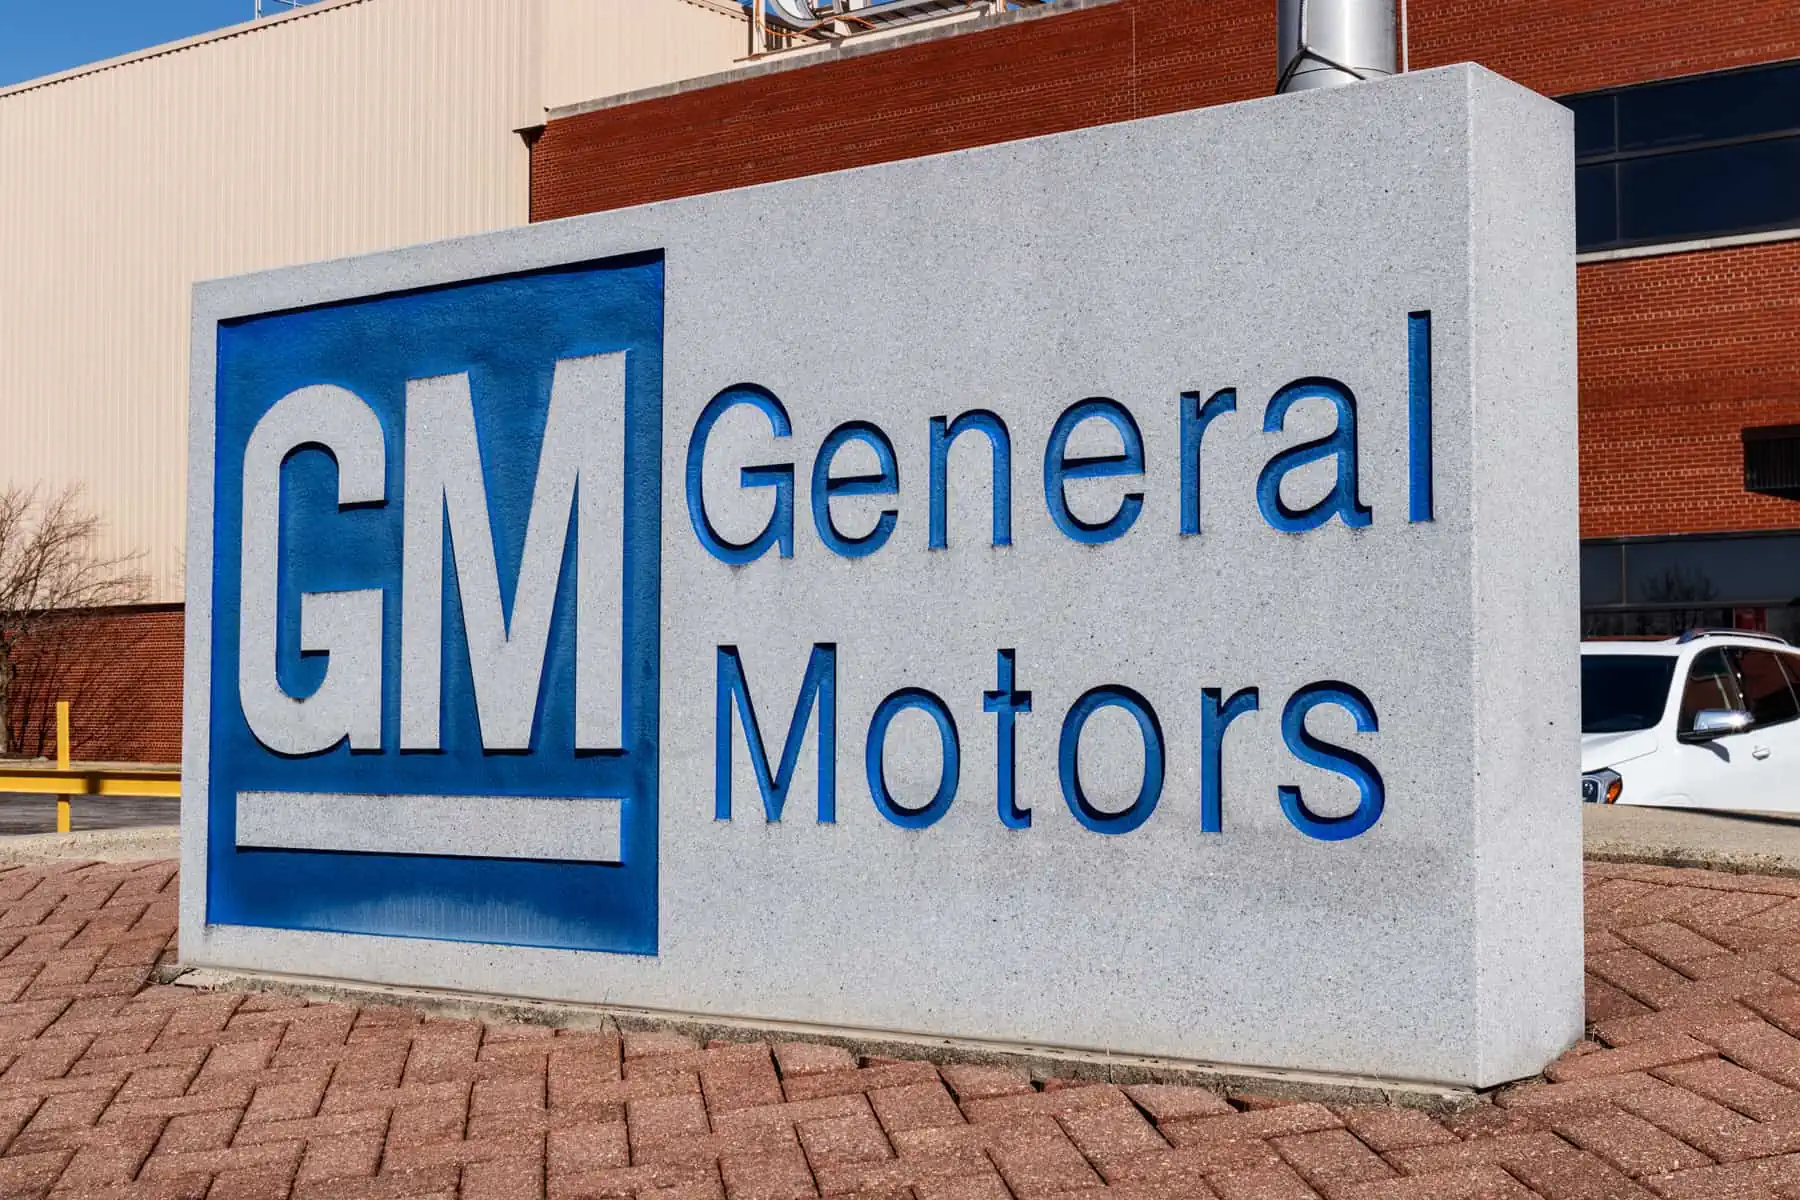 general motors invertira millones en fabricas de estados unidos